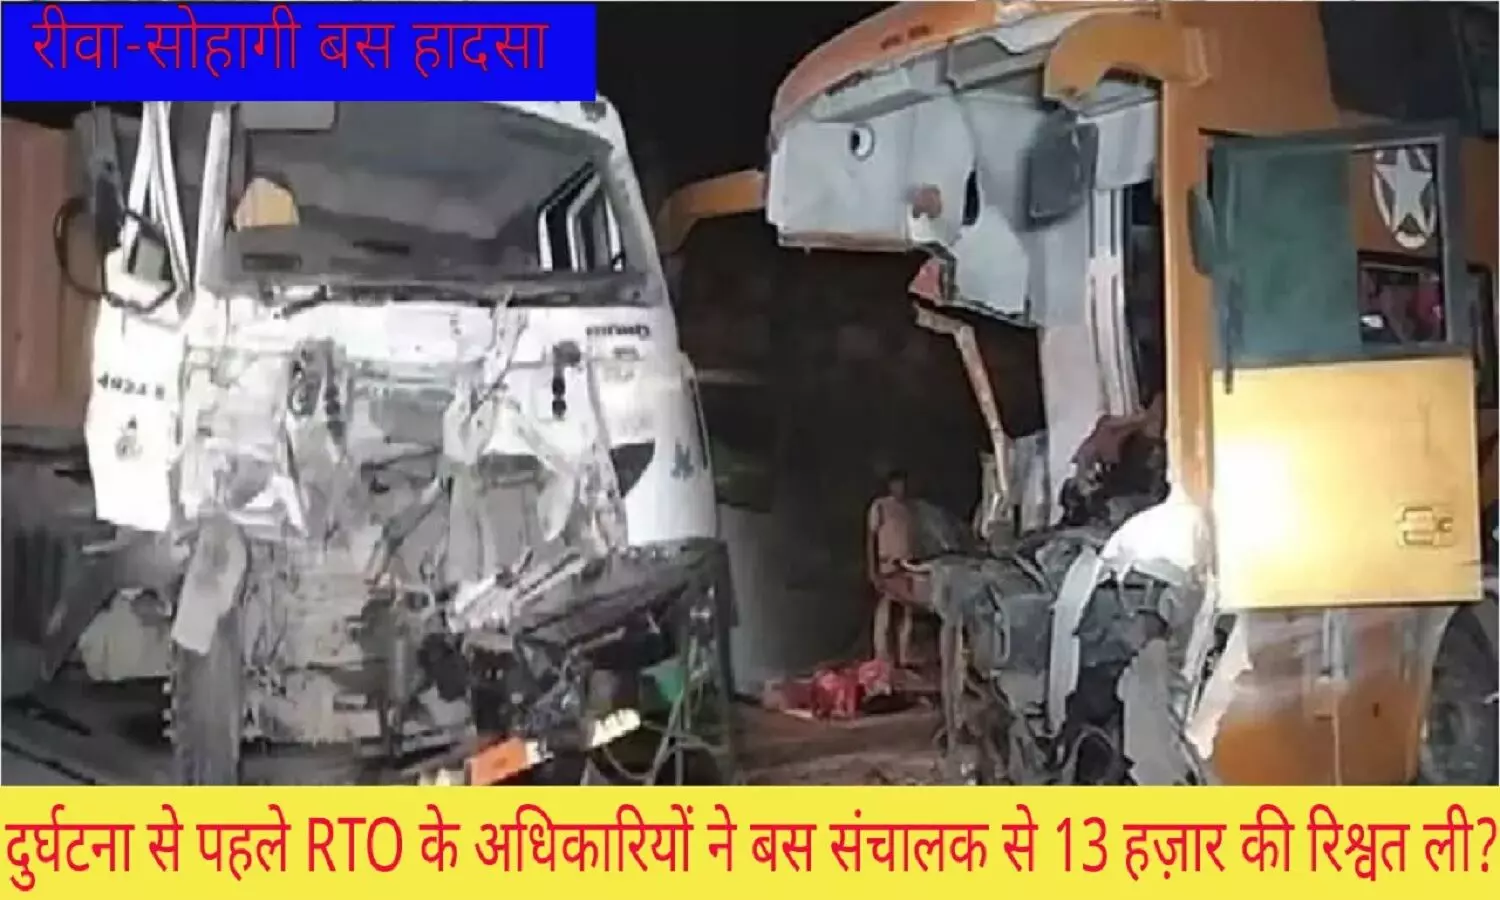 रीवा सोहागी बस हादसा: दुर्घटना से पहले RTO के लोगों ने बस संचालक से 13 हज़ार की रिश्वत ली?